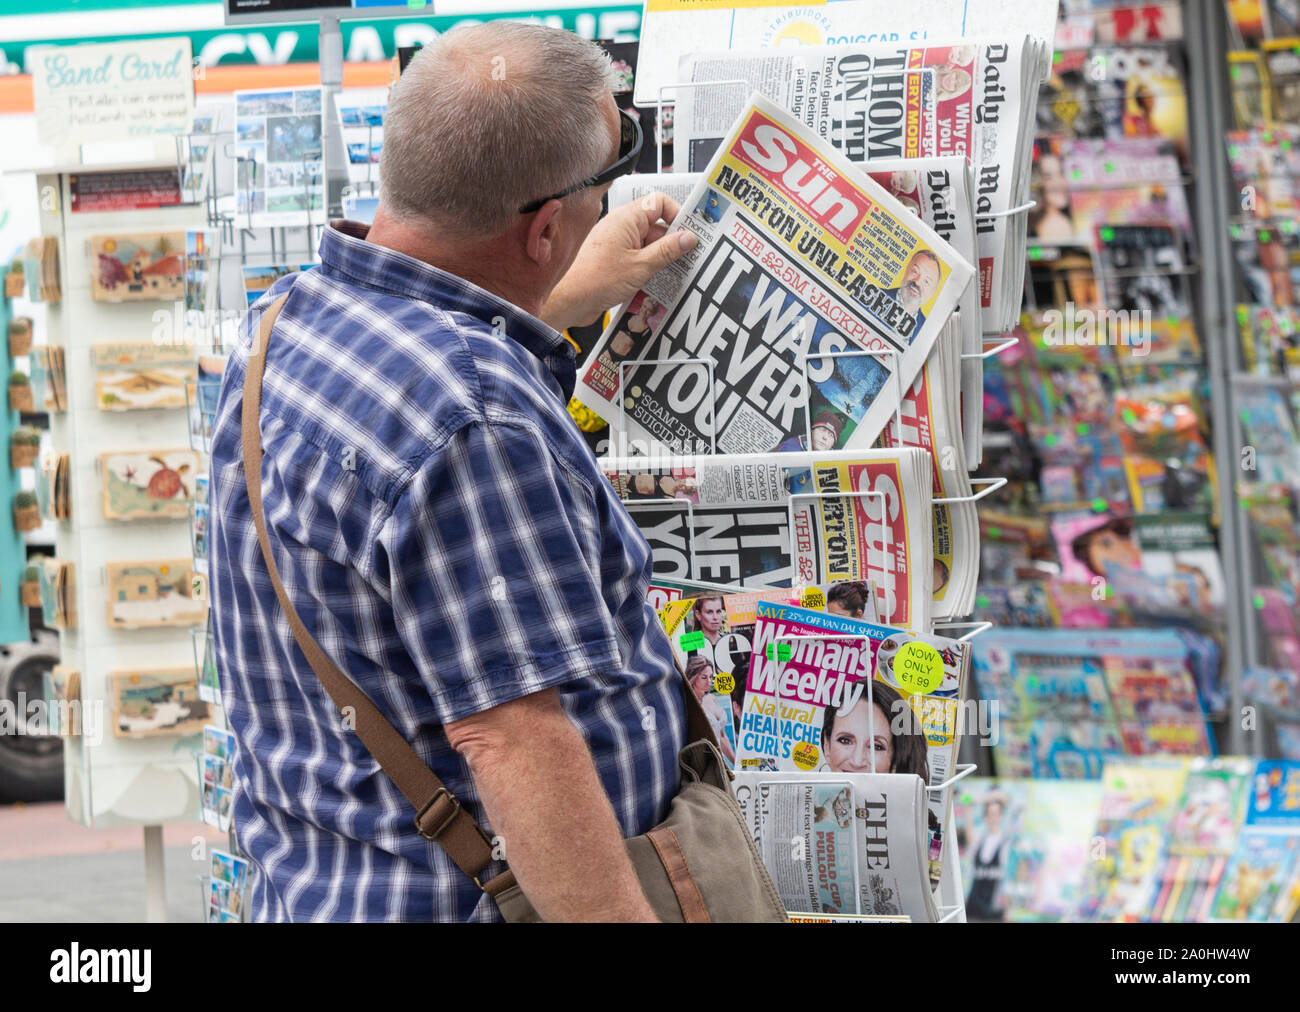 British tourist buying English newspaper in Spain Stock Photo